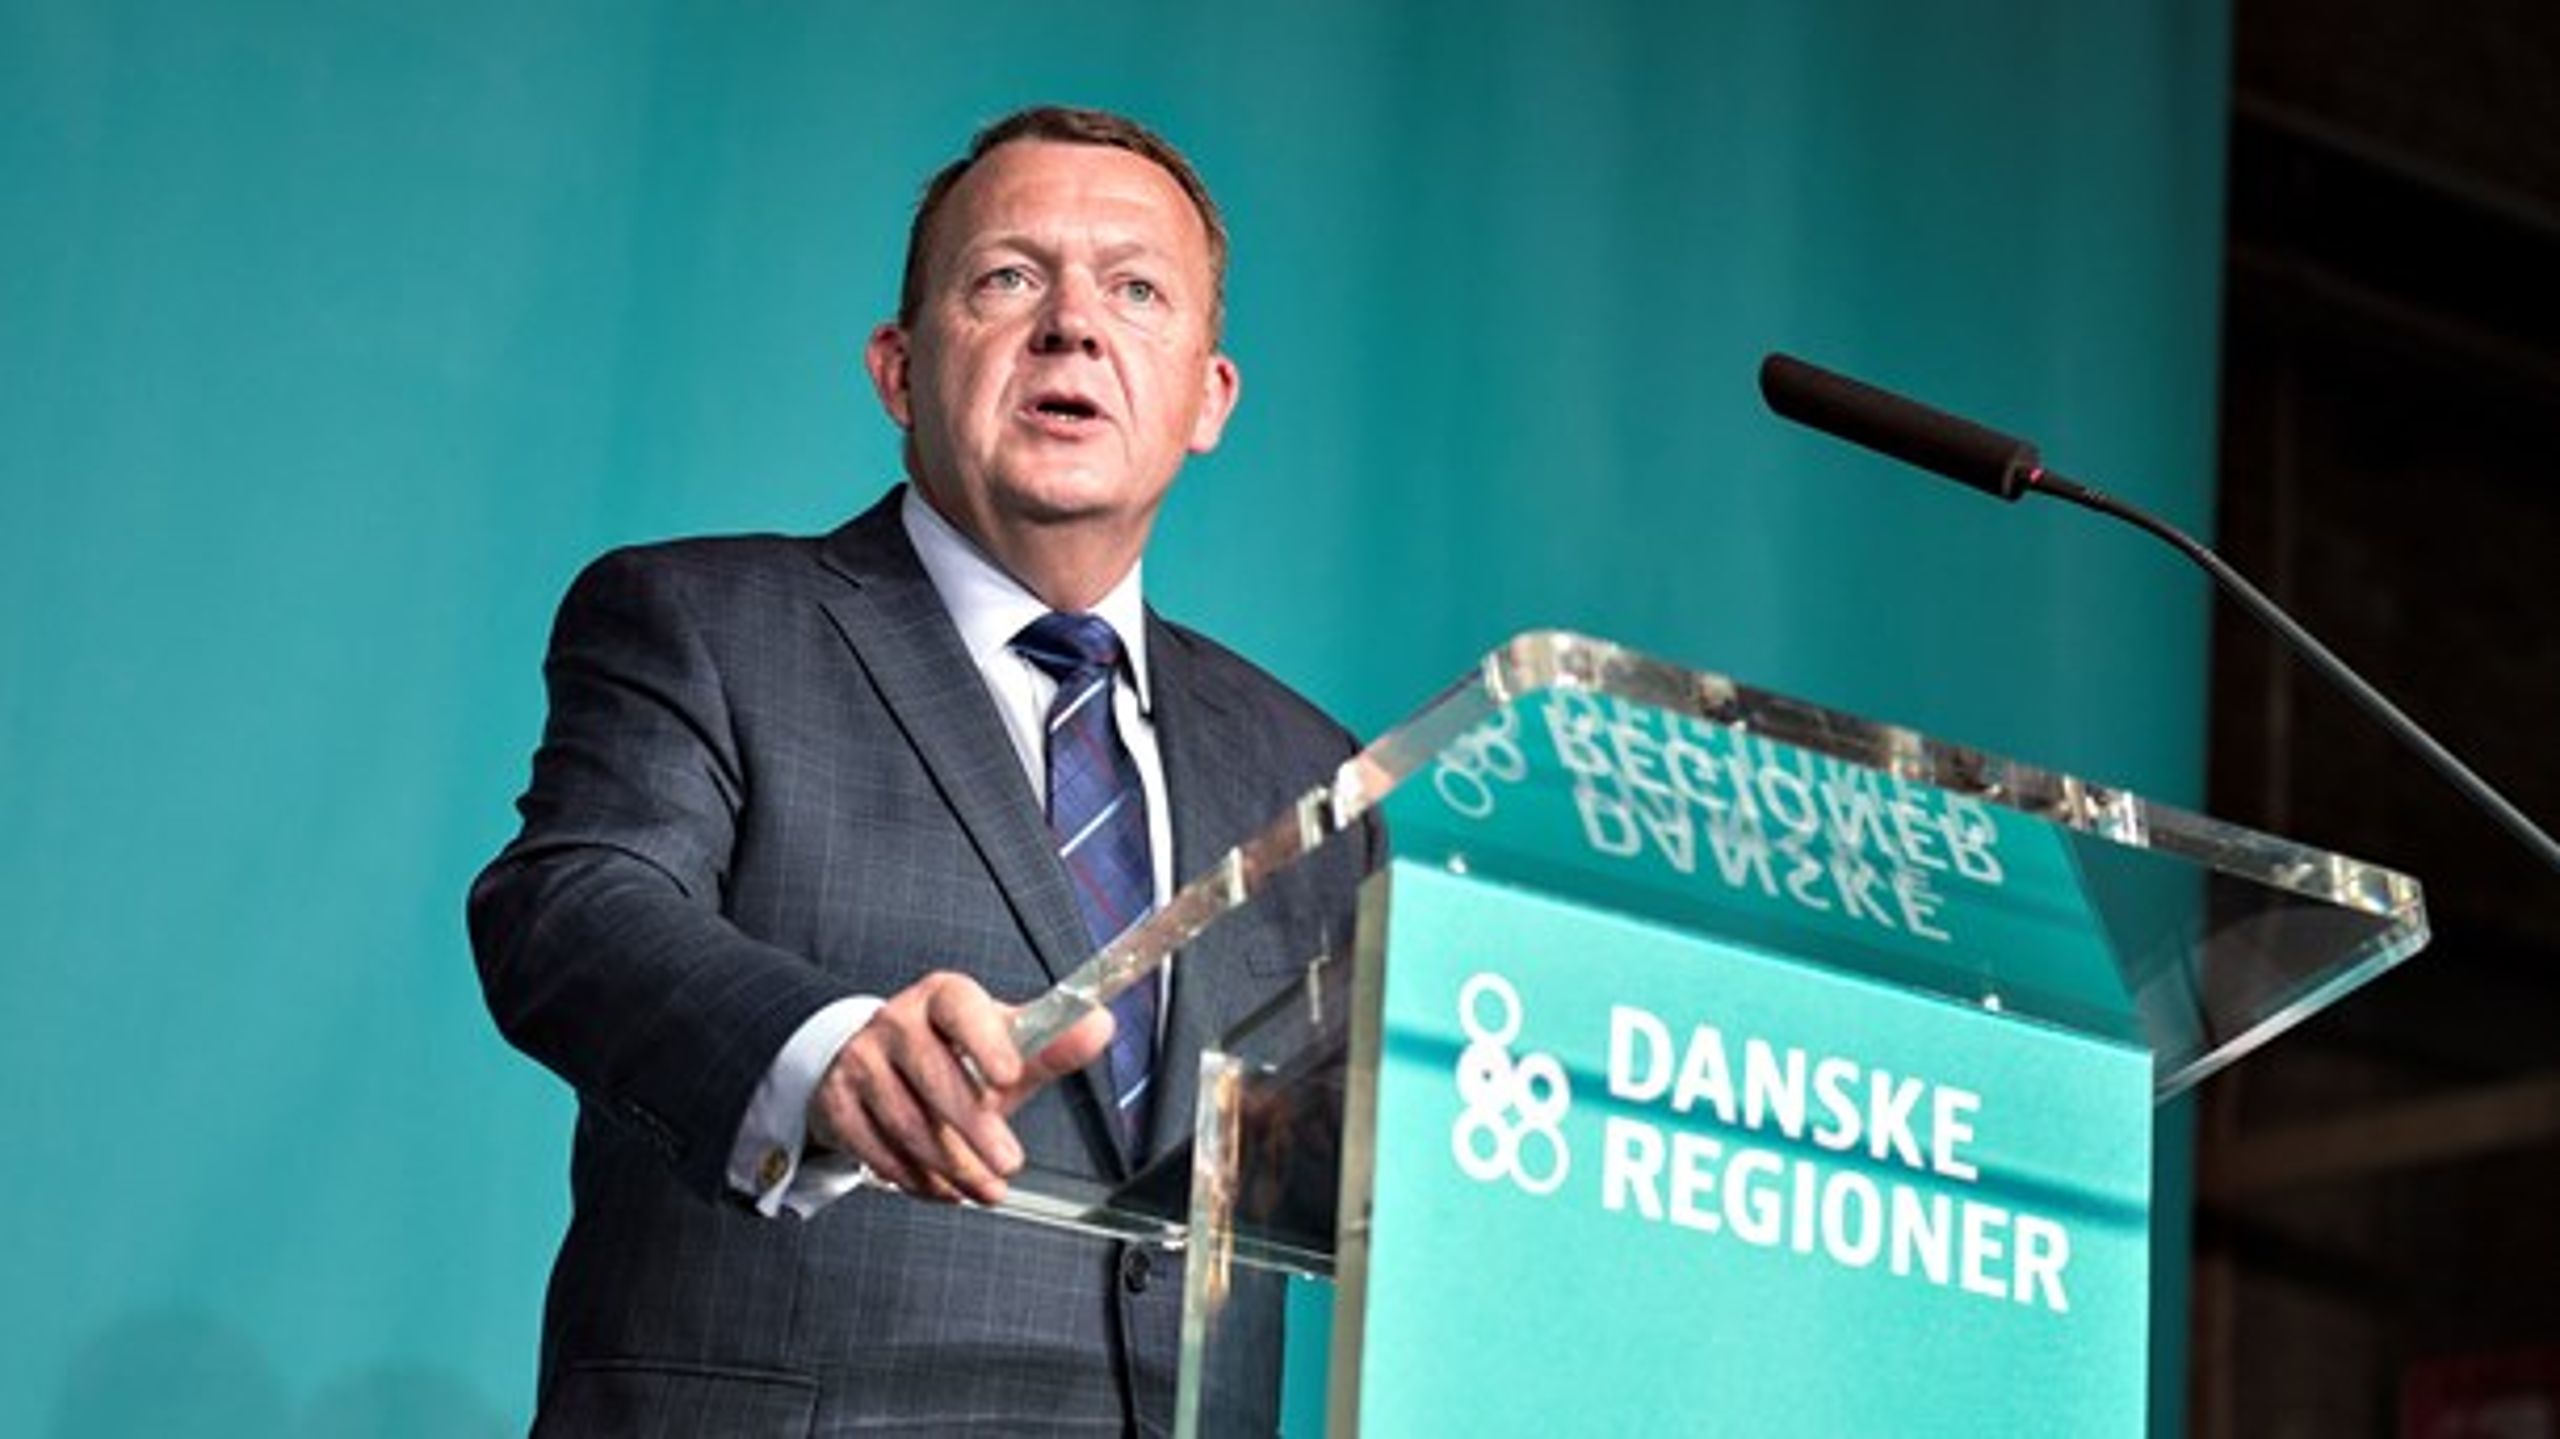 Statsminister Lars Løkke Rasmussen (V) taler på Danske Regioners generalforsamling i Aarhus.